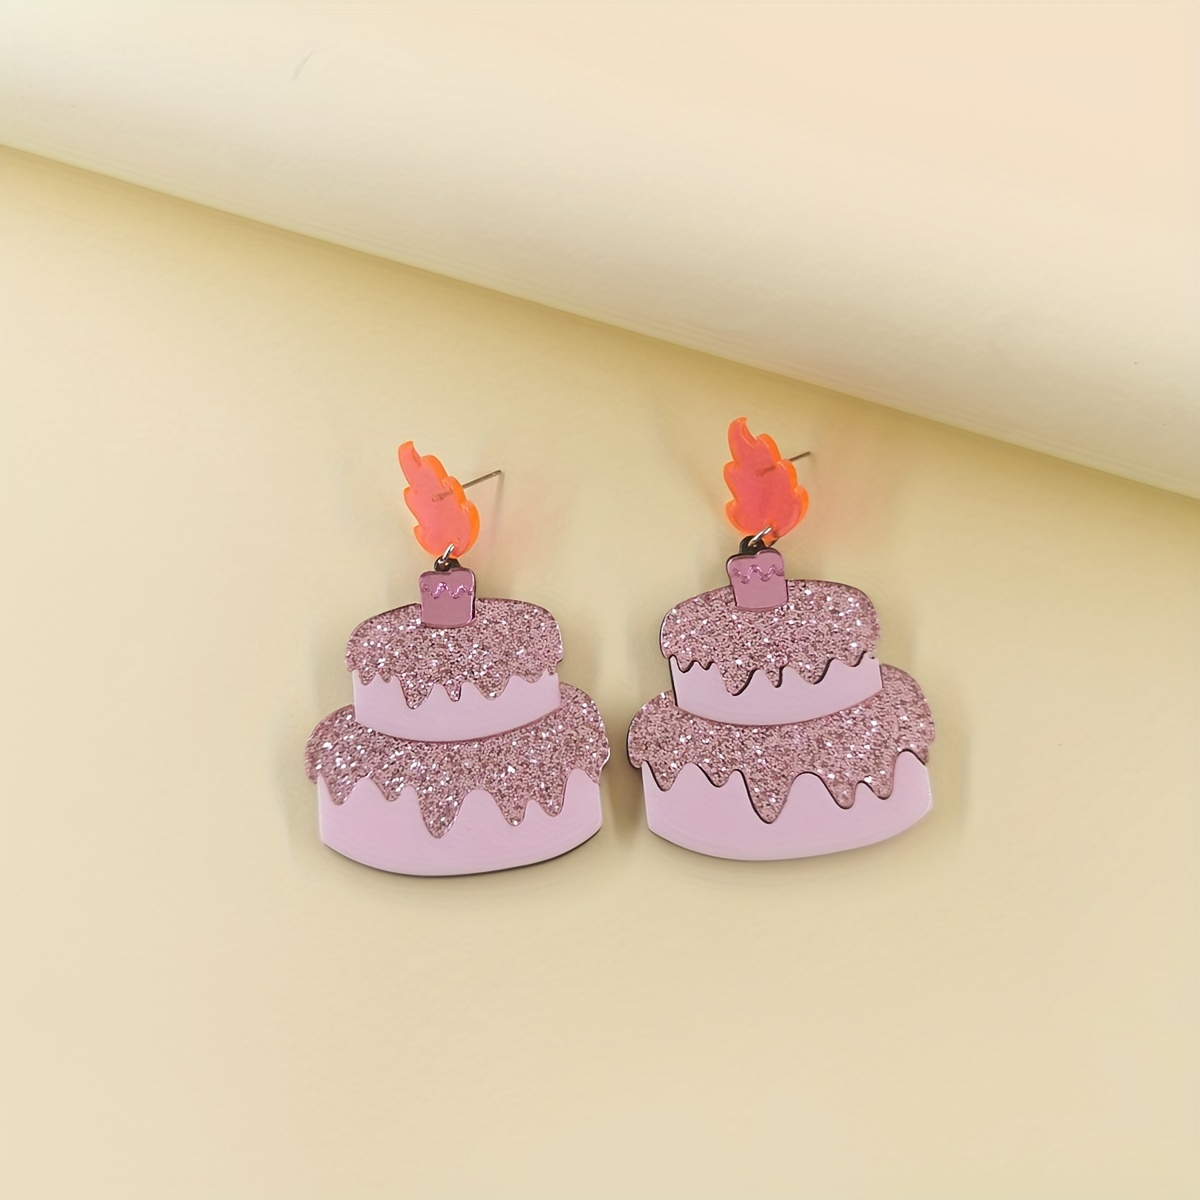 Velas de cumpleaños número 50 de 4 pulgadas, con forma de diamante 3D  número 50 velas para decoración de pastel para decoración de fiesta de